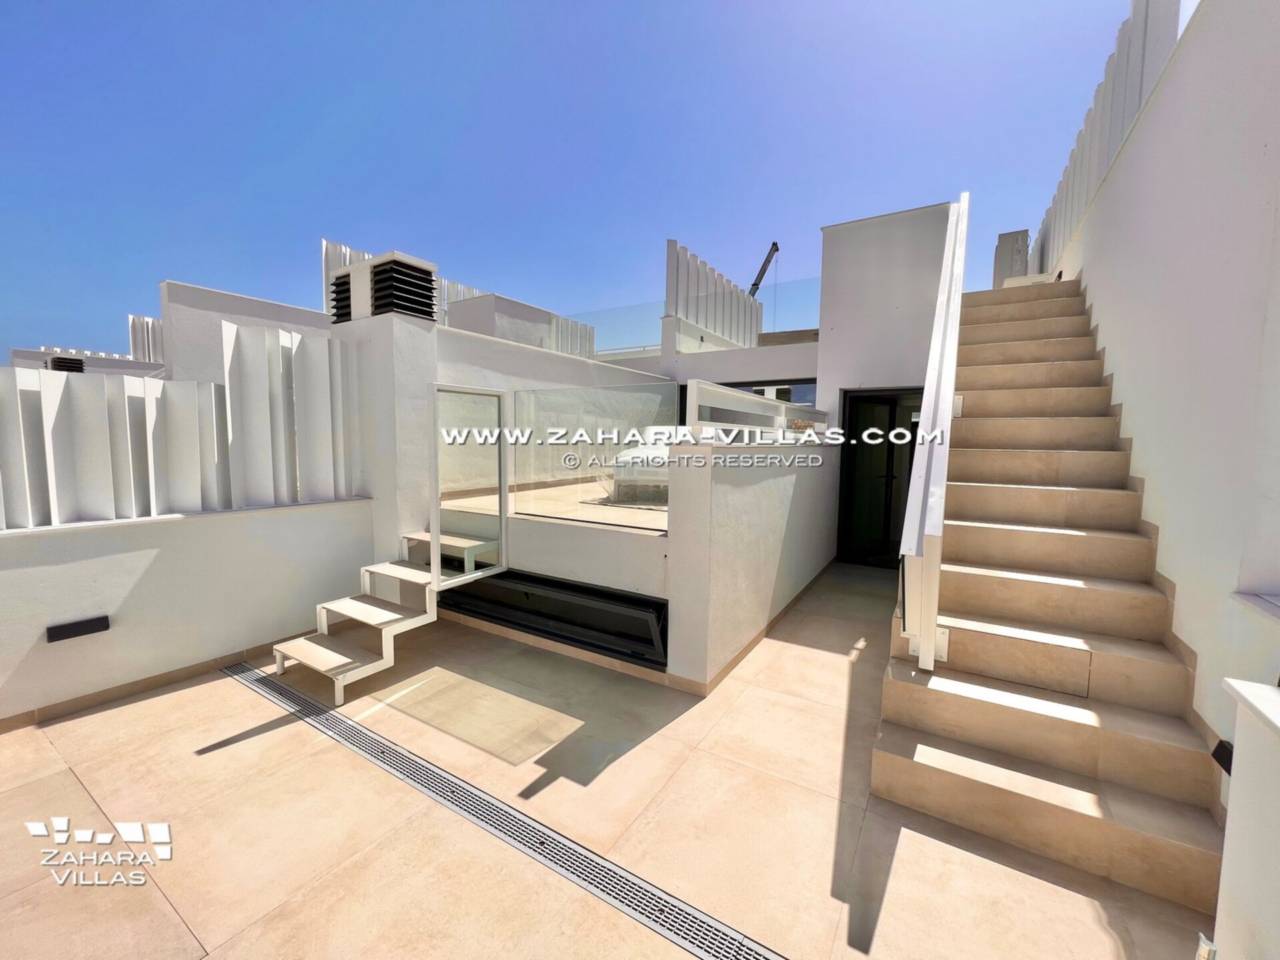 Imagen 35 de Promoción obra nueva terminada "EL OASIS DE ZAHARA" viviendas adosadas junto al mar